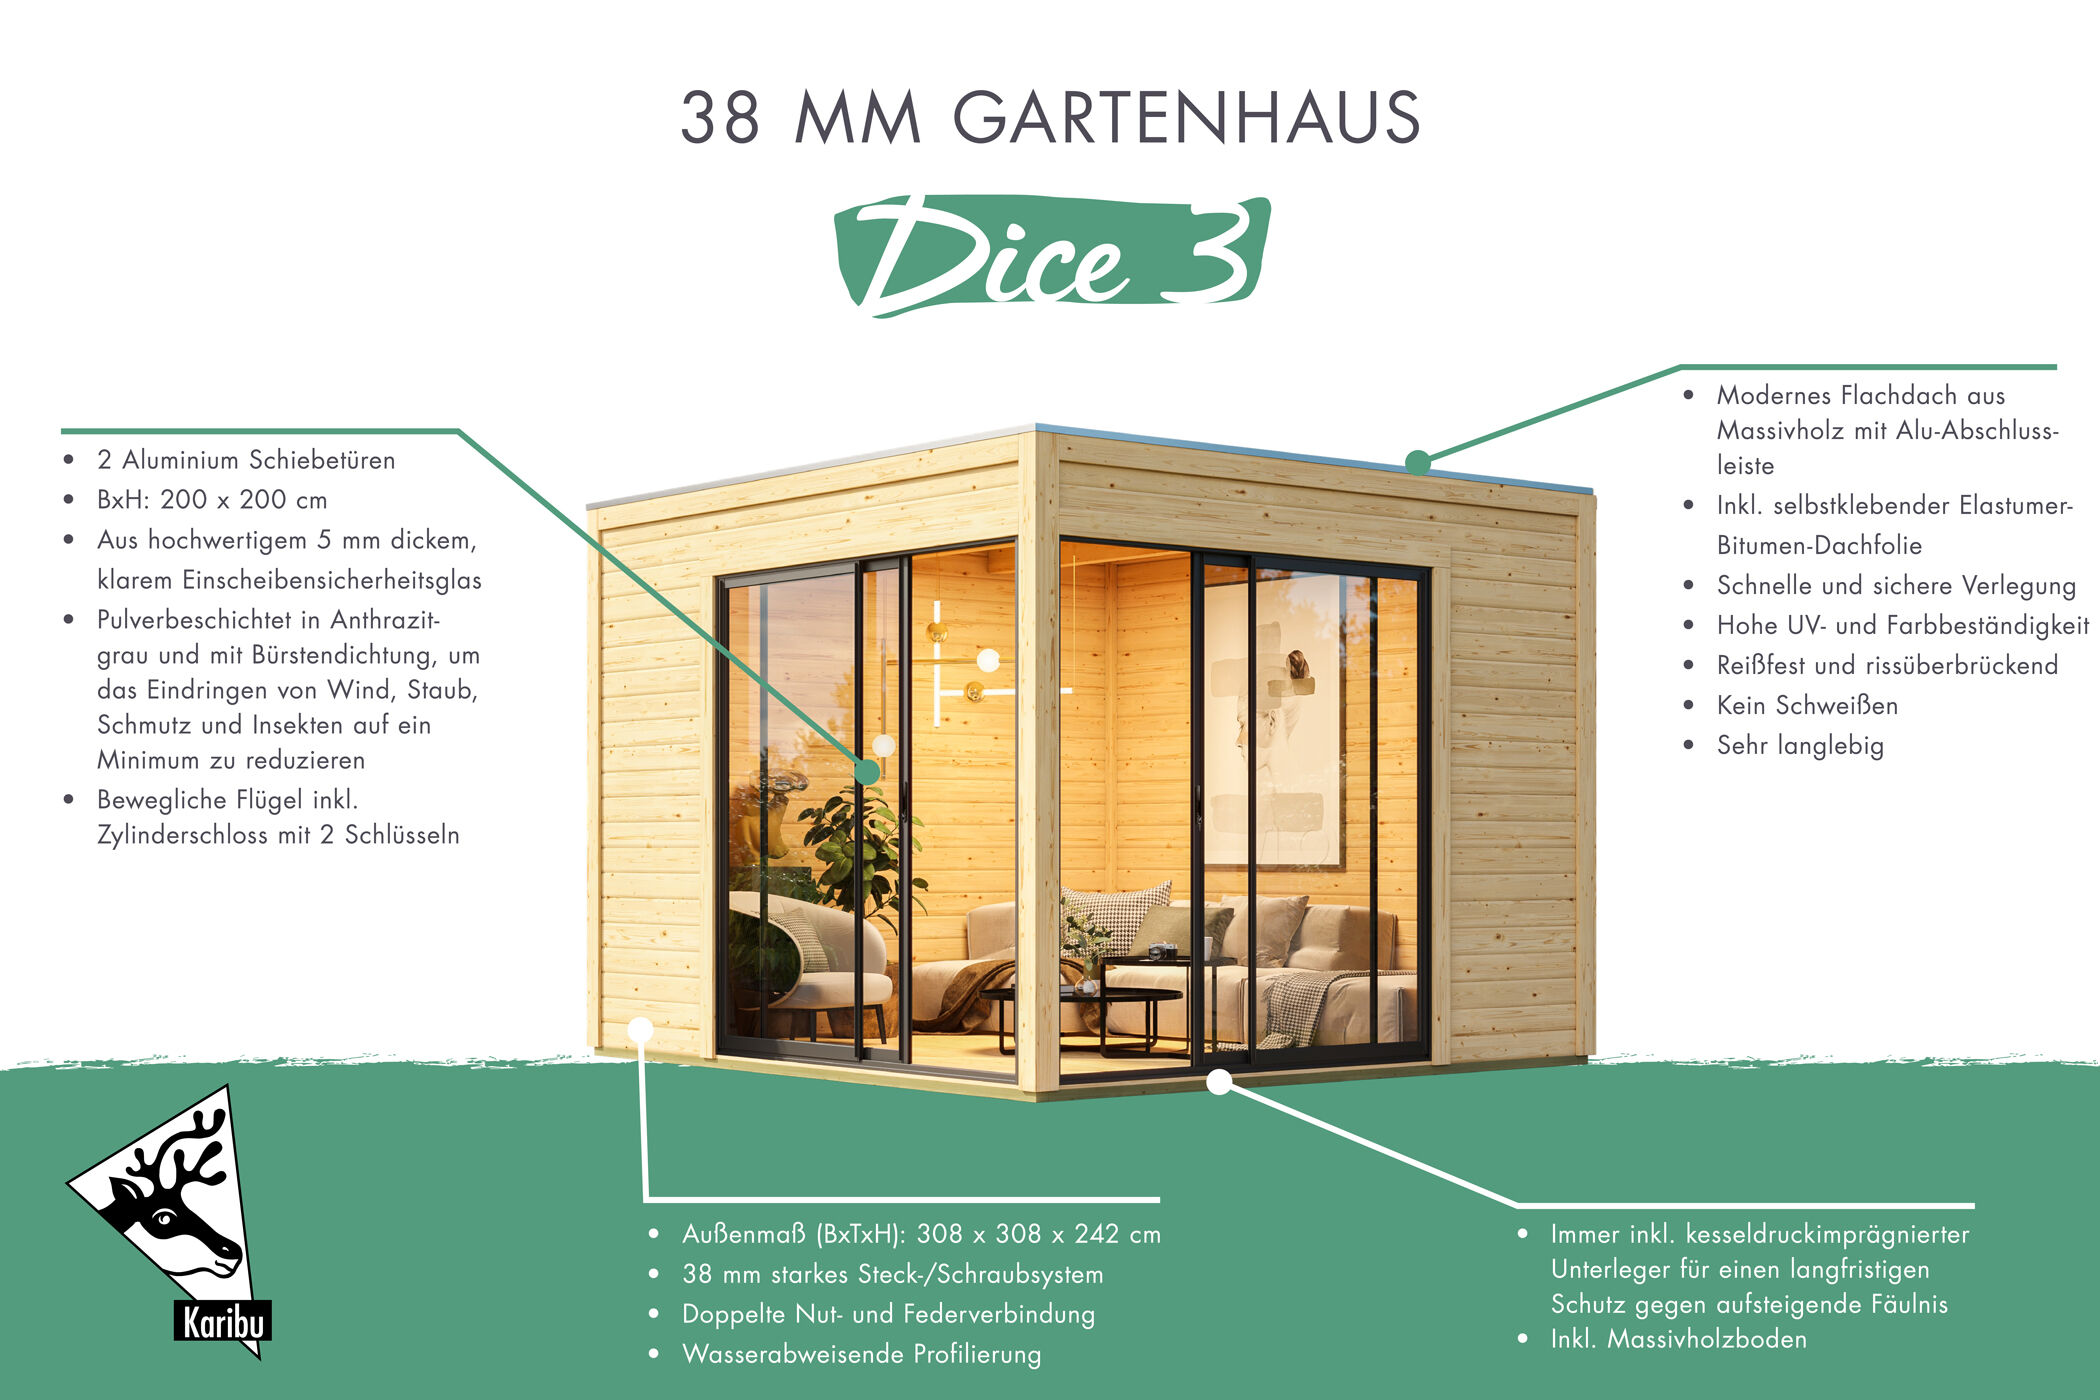 Gartenhaus Dice 3